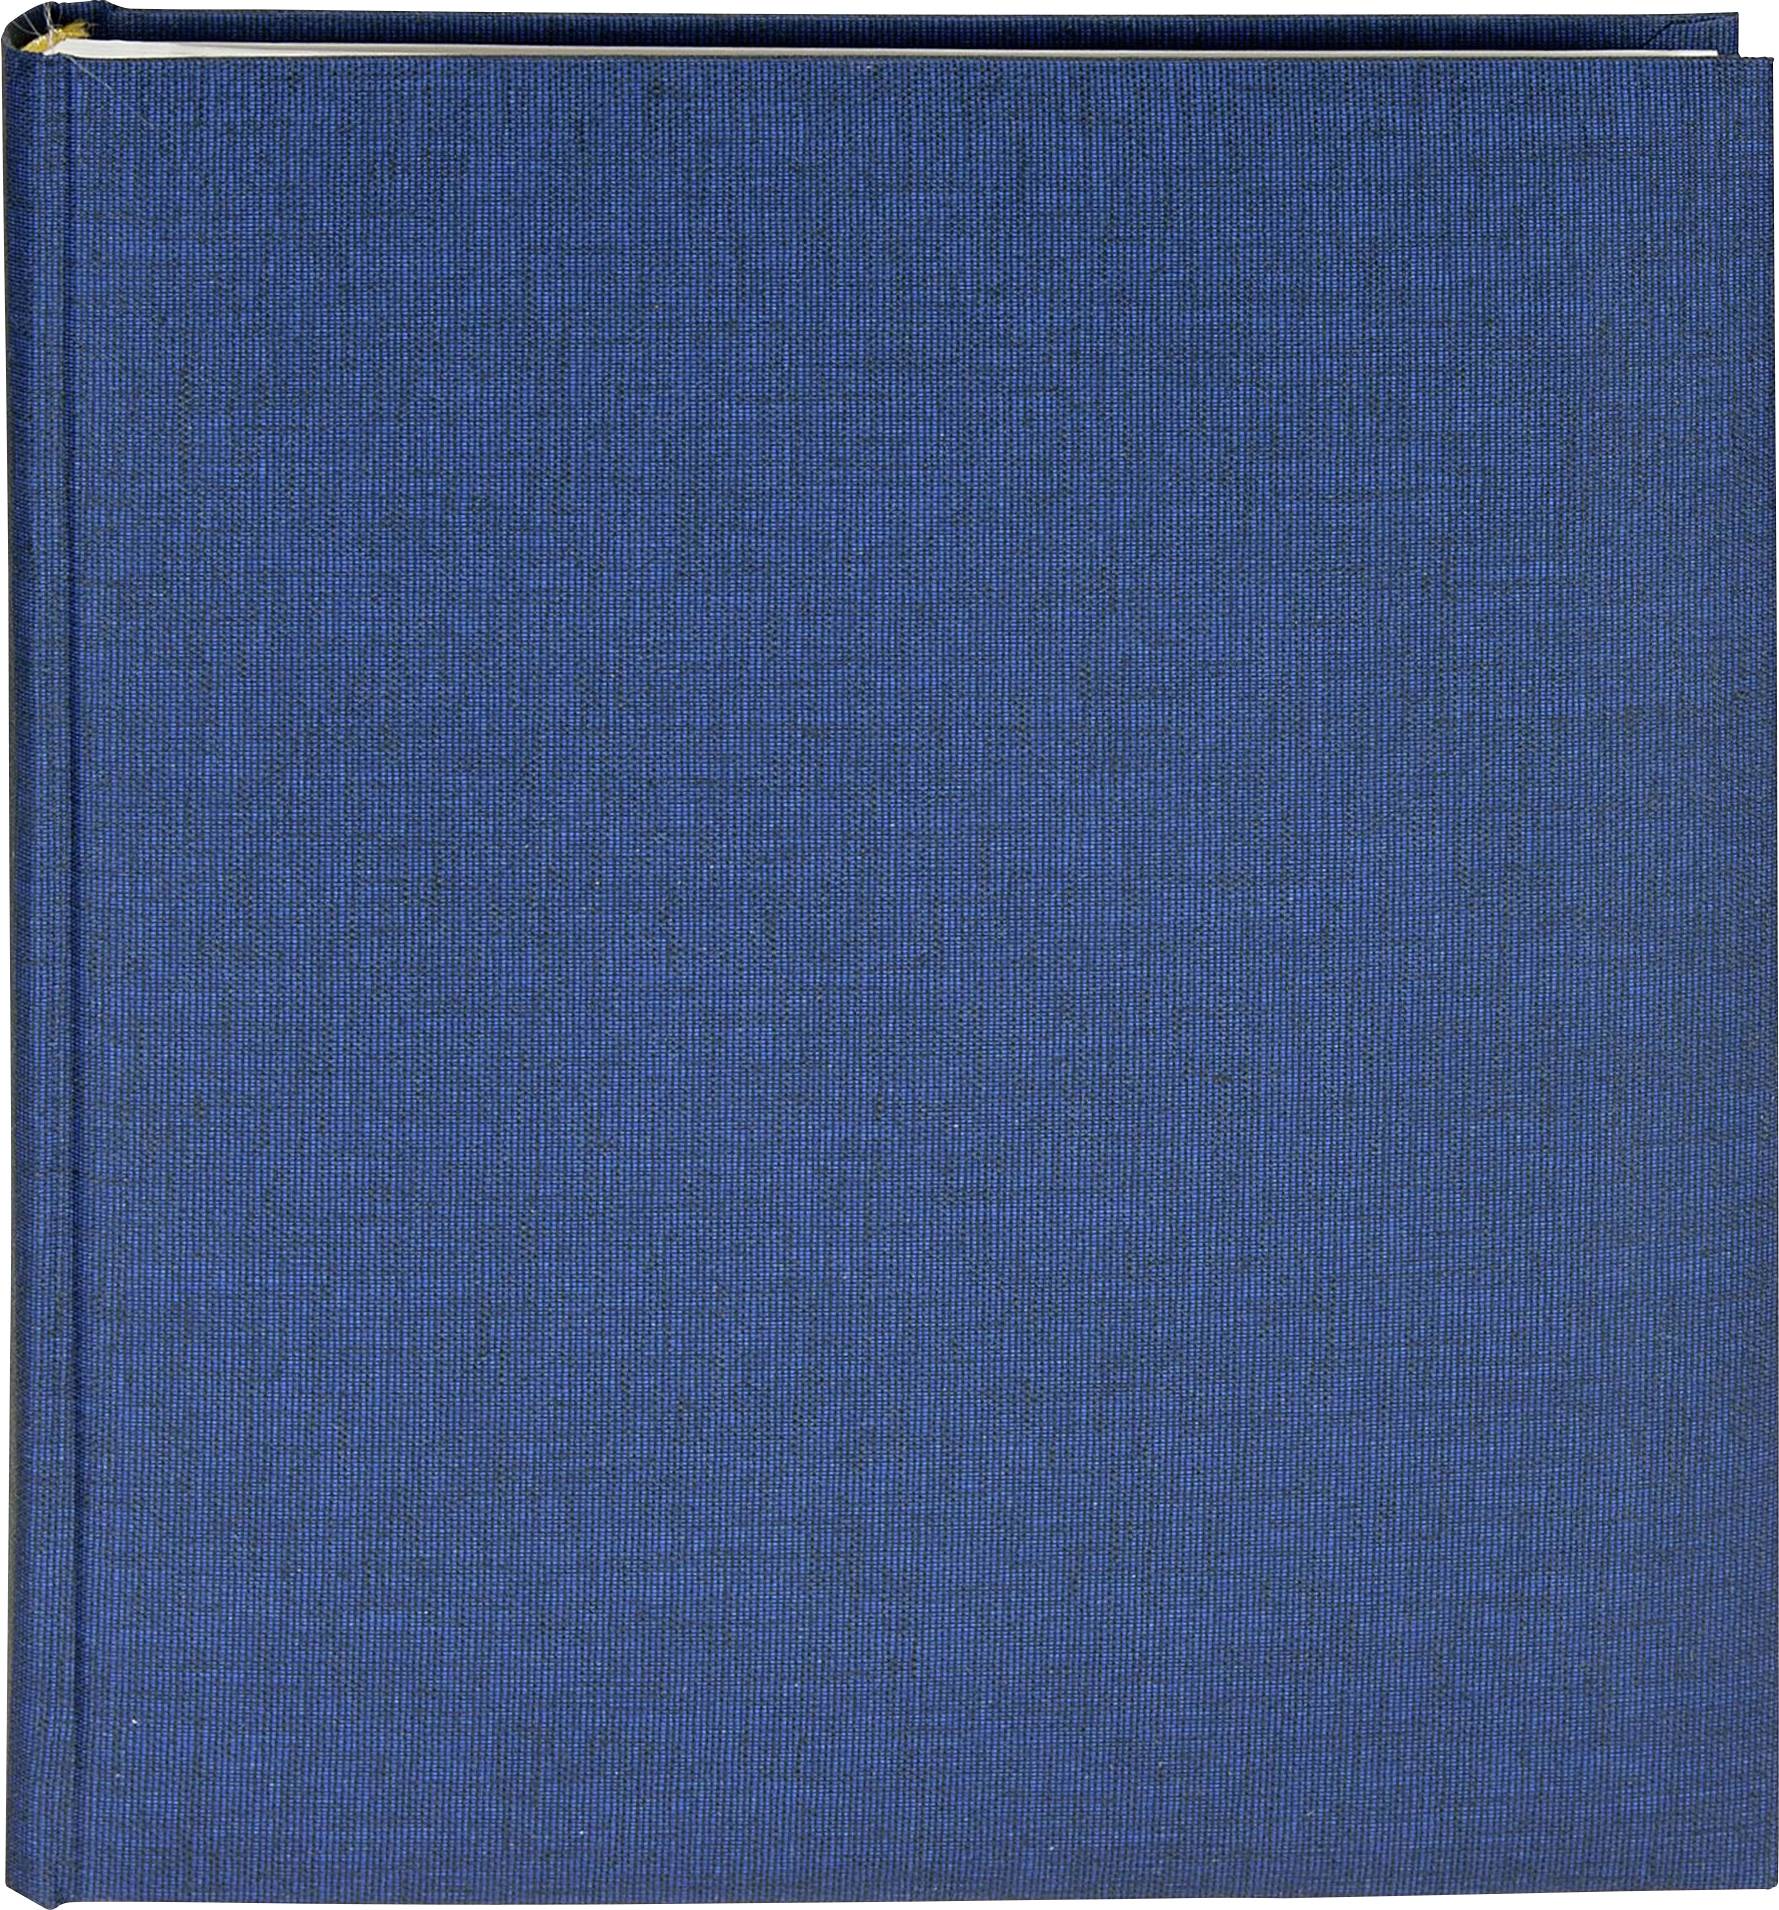 GOLDBUCH Summertime blau 30x31 100 weiße Seiten